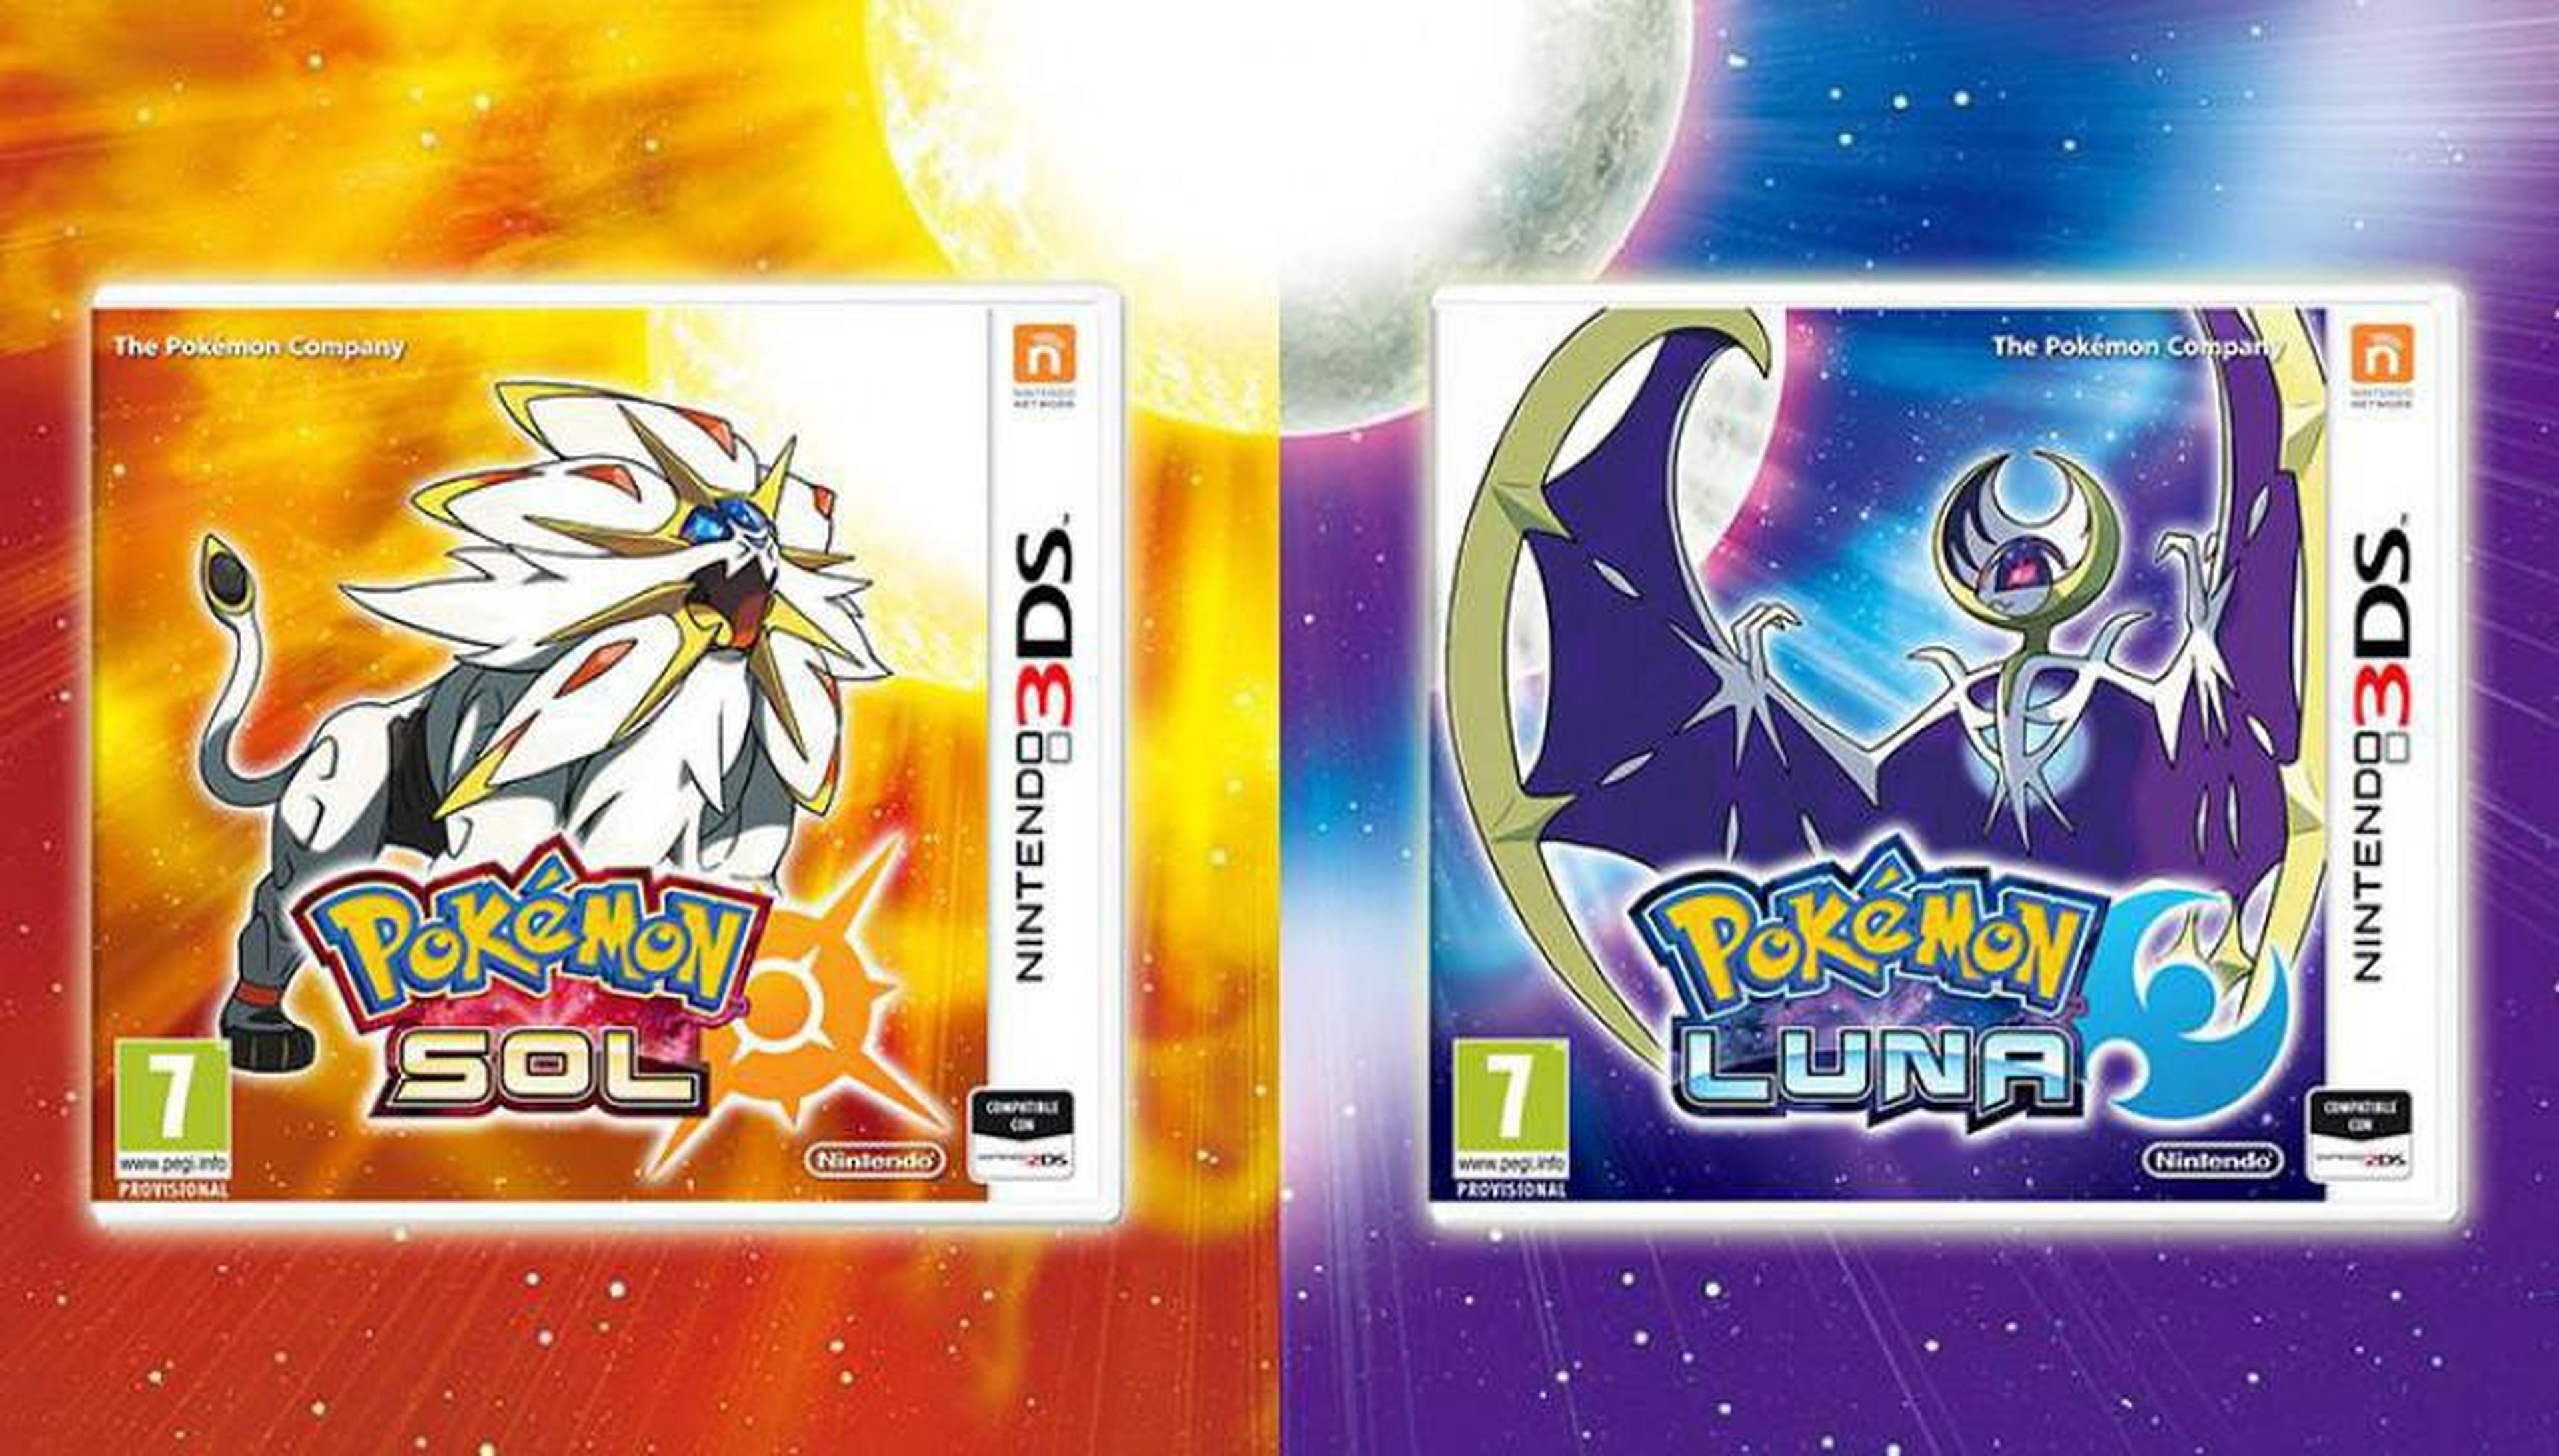 Pokémon Sol / Luna, la generación definitiva de la saga Pokémon, se alineará el 23 de noviembre en 3DS.